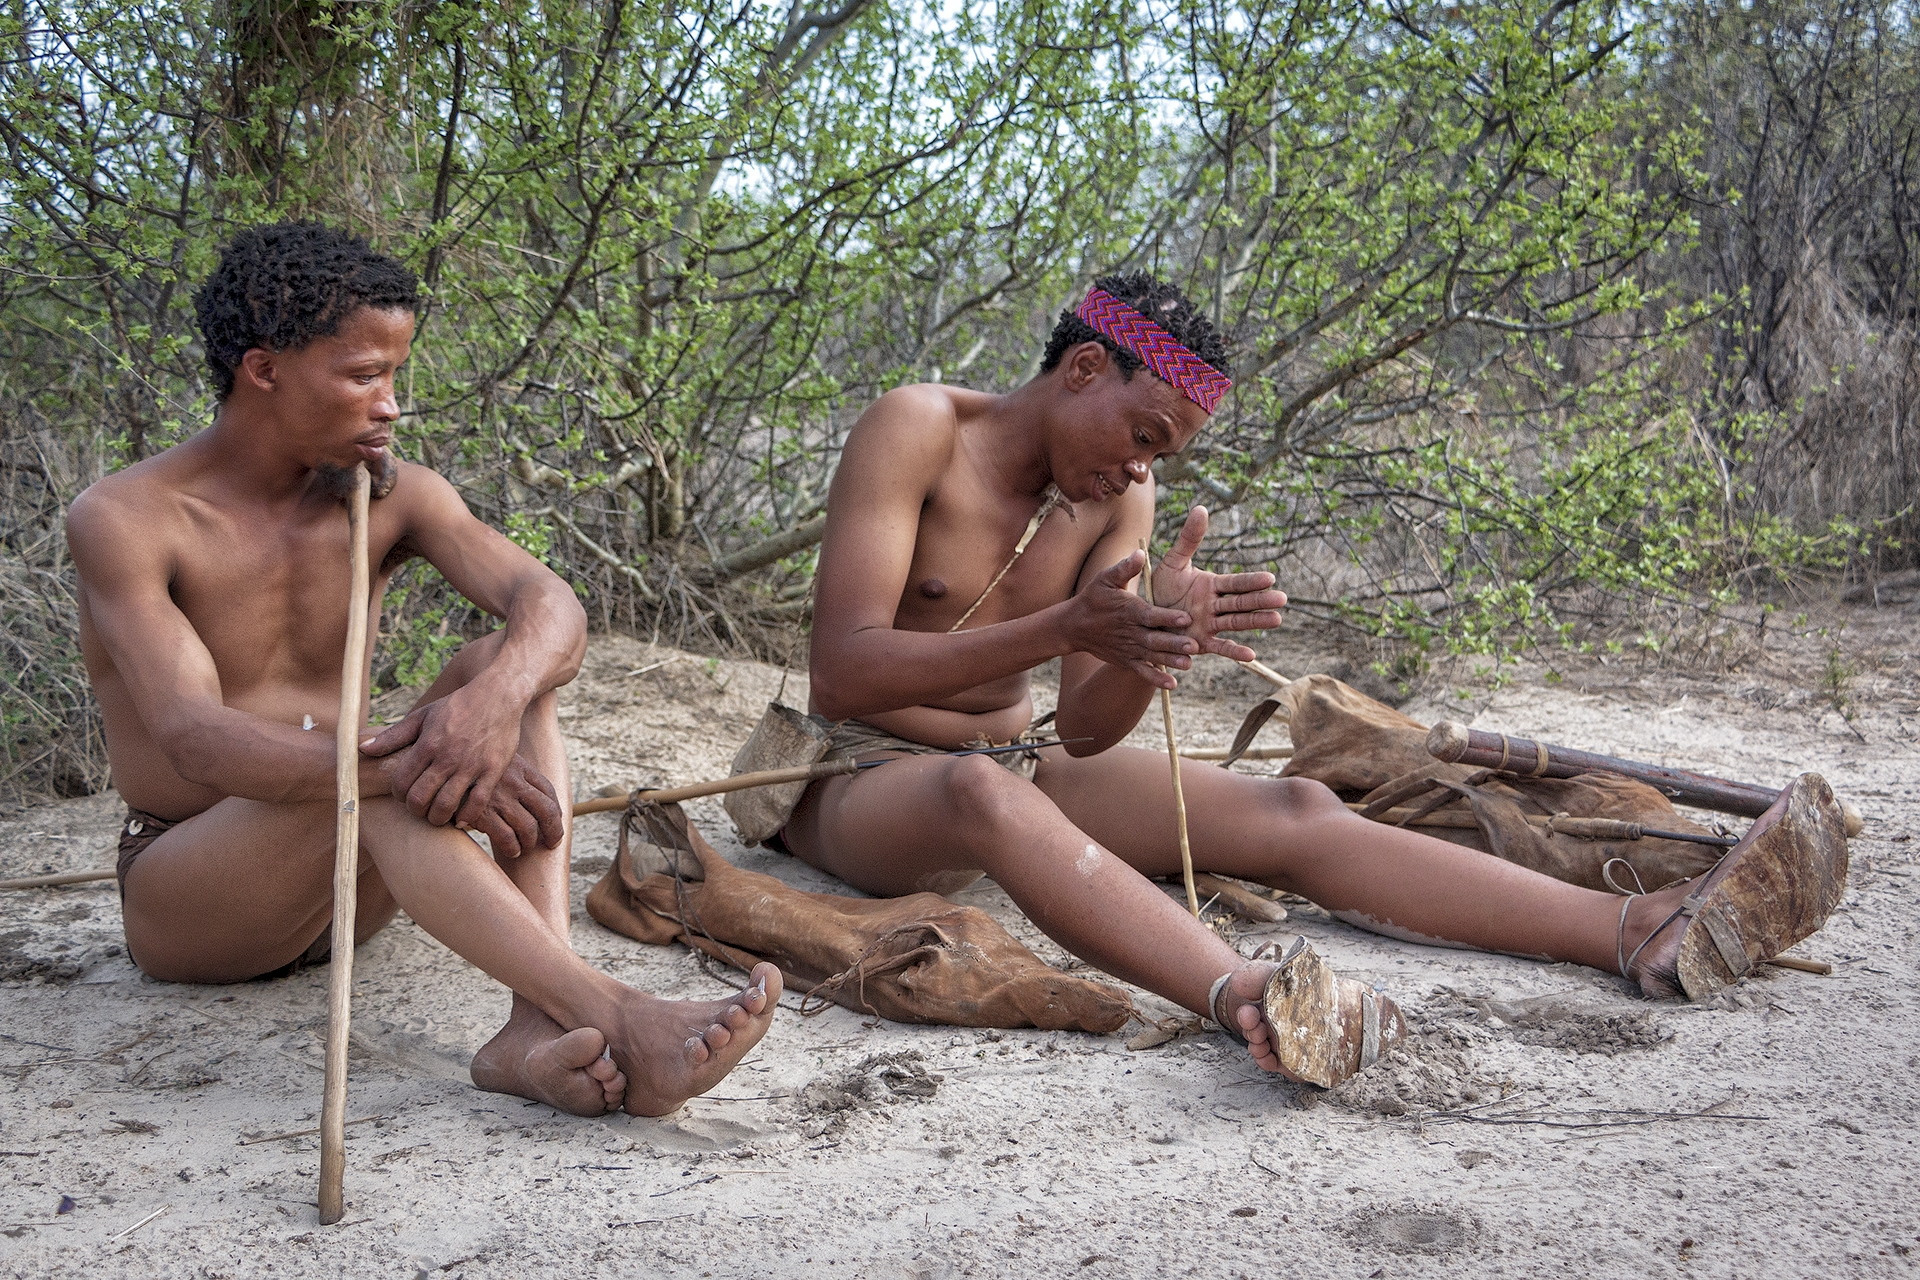 члены мужчин африканских племен фото 81